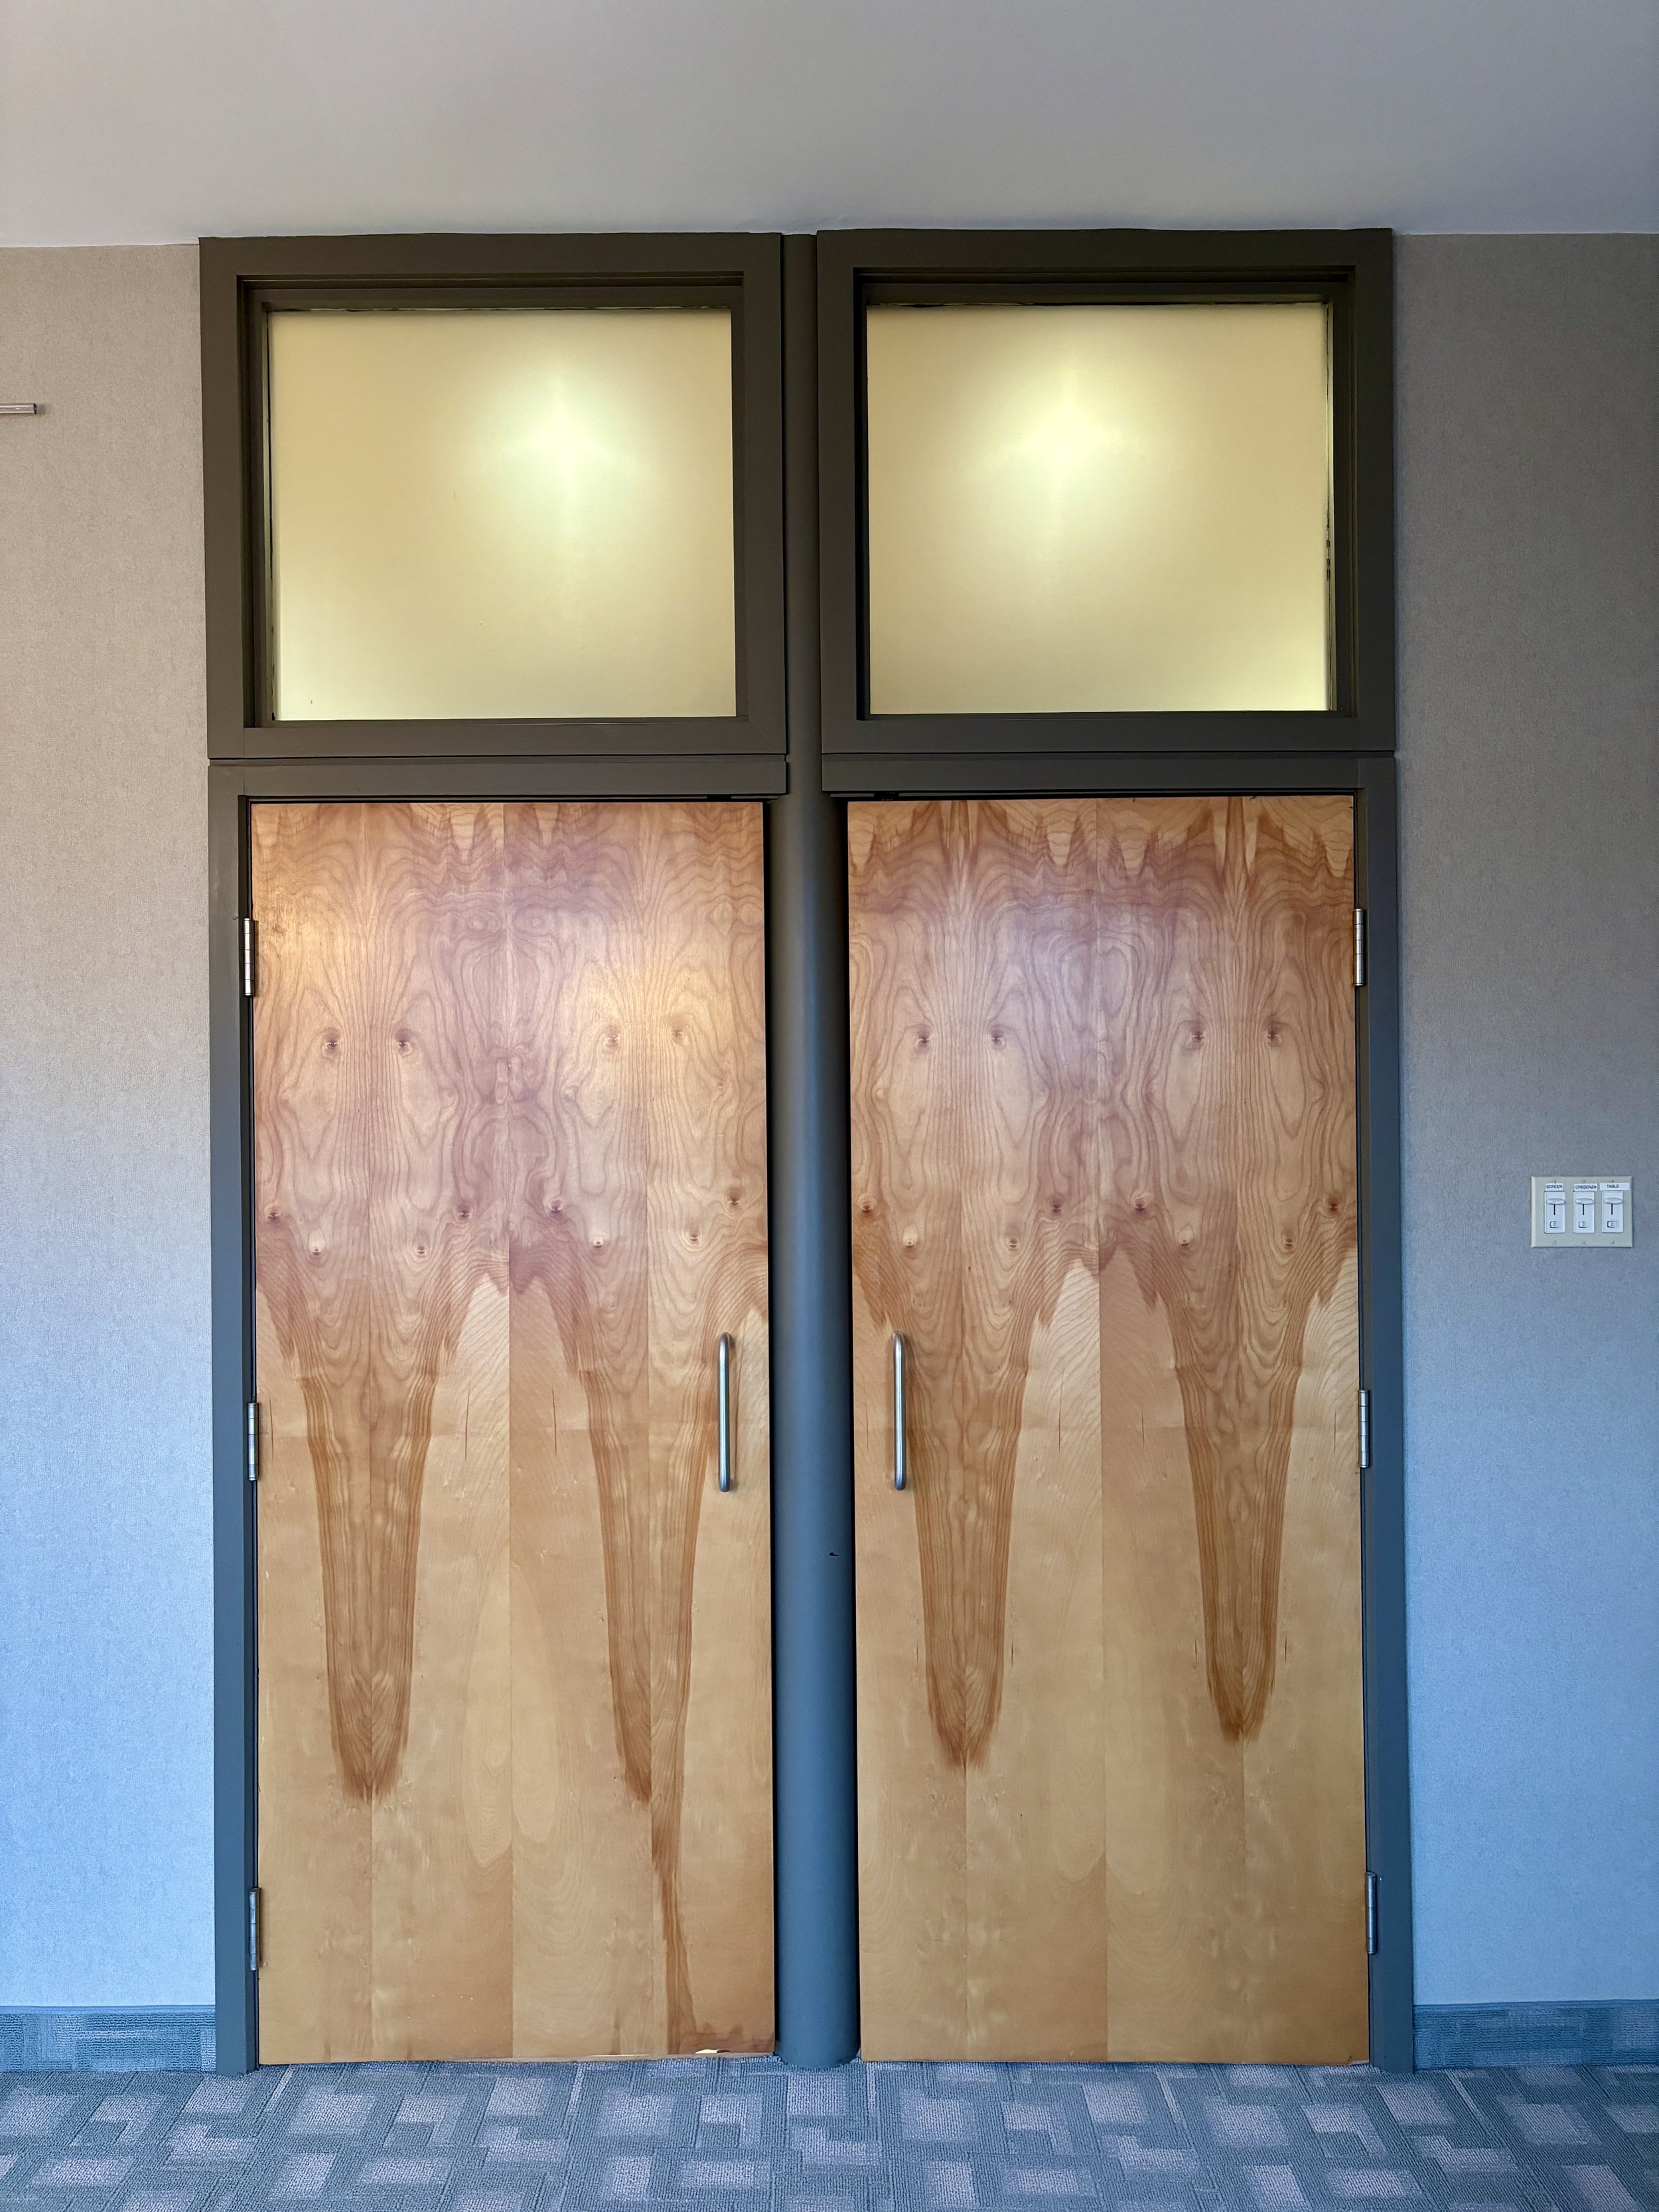 2nd Floor Studio with Two Doors Closed